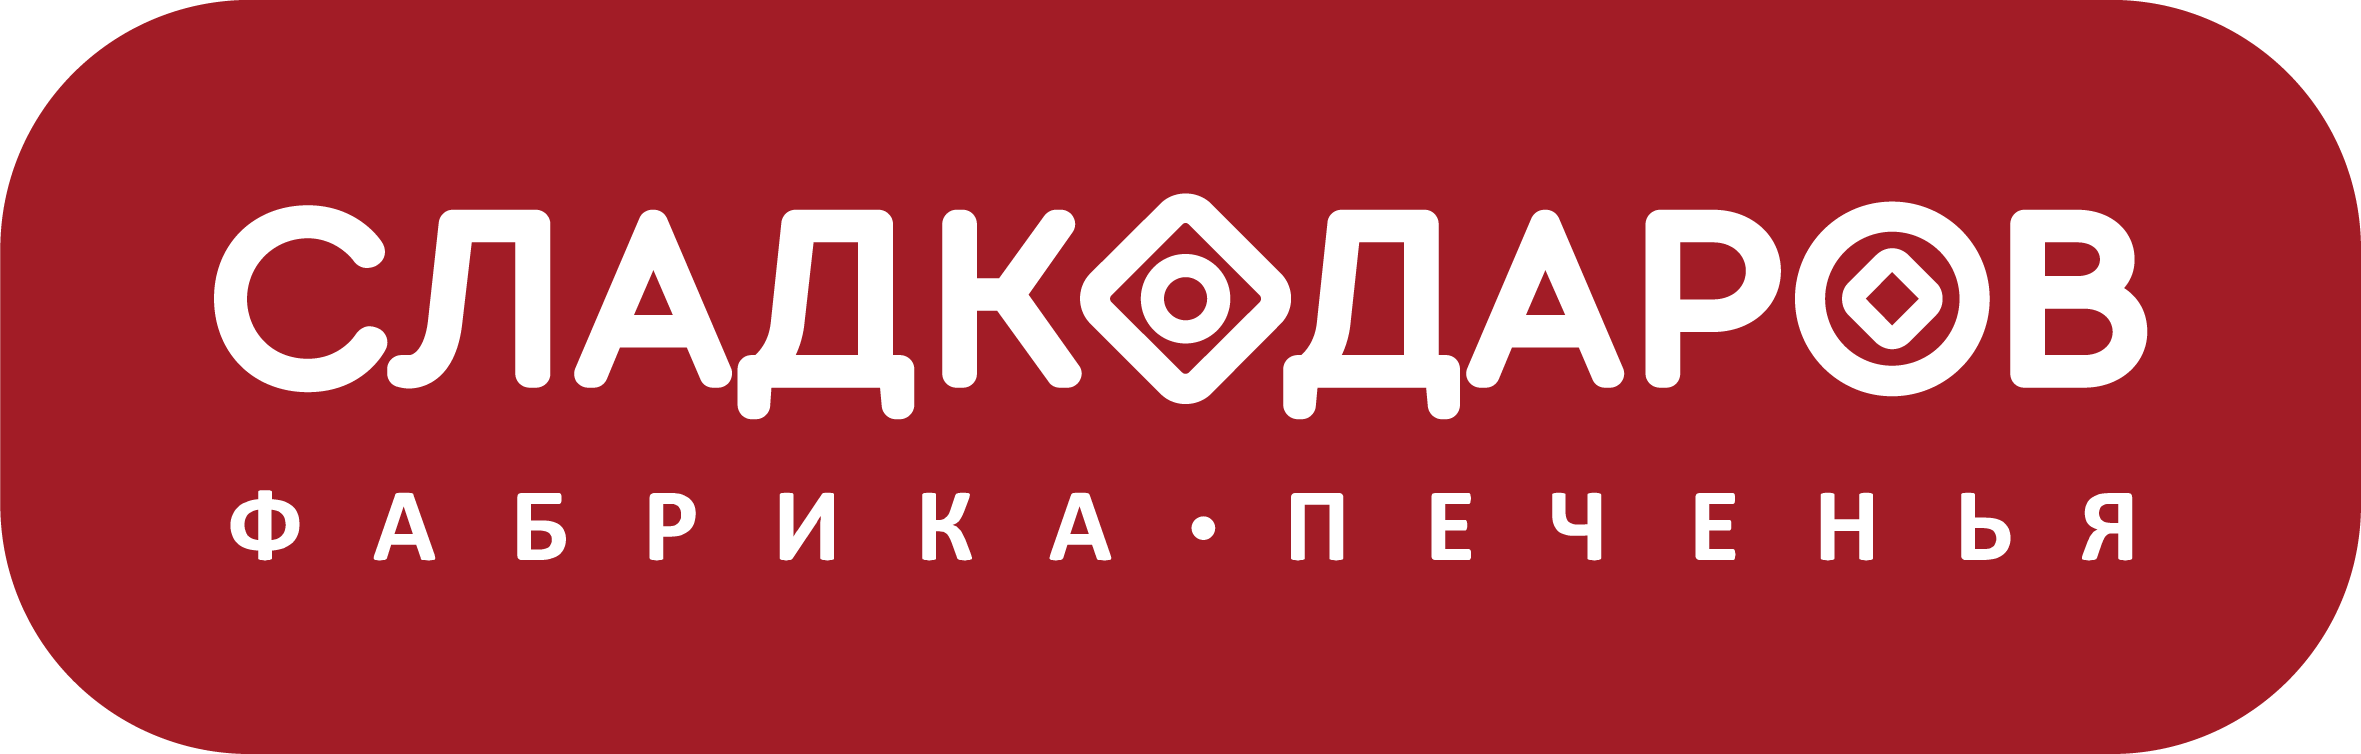 Логотип Сладкодаров